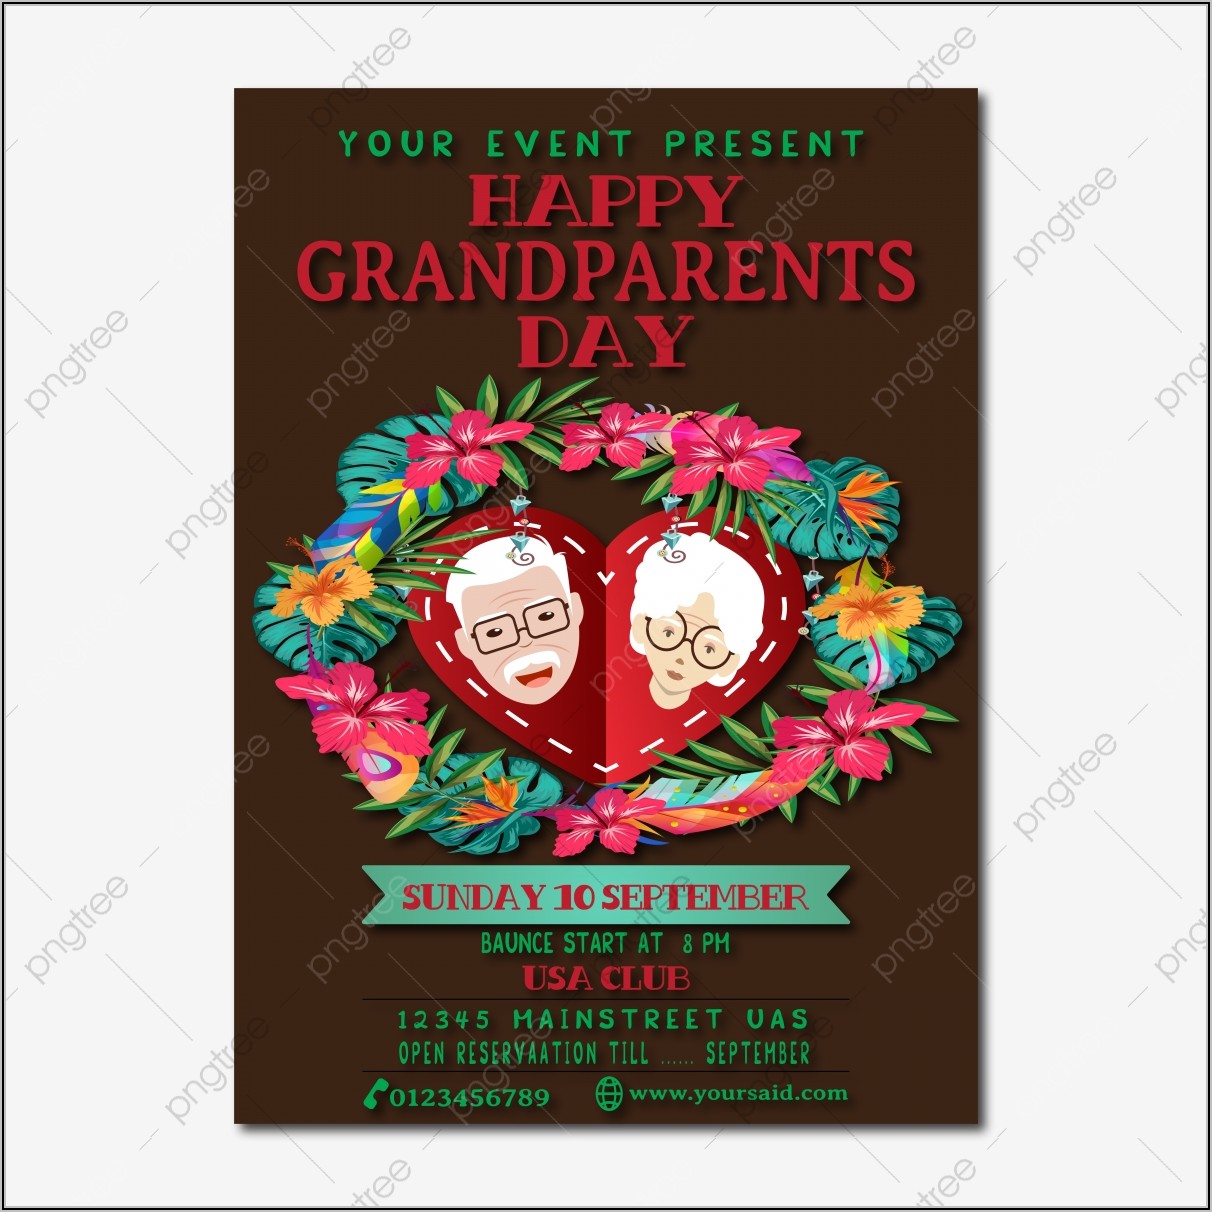 Grandparents Day Invitation Card Template